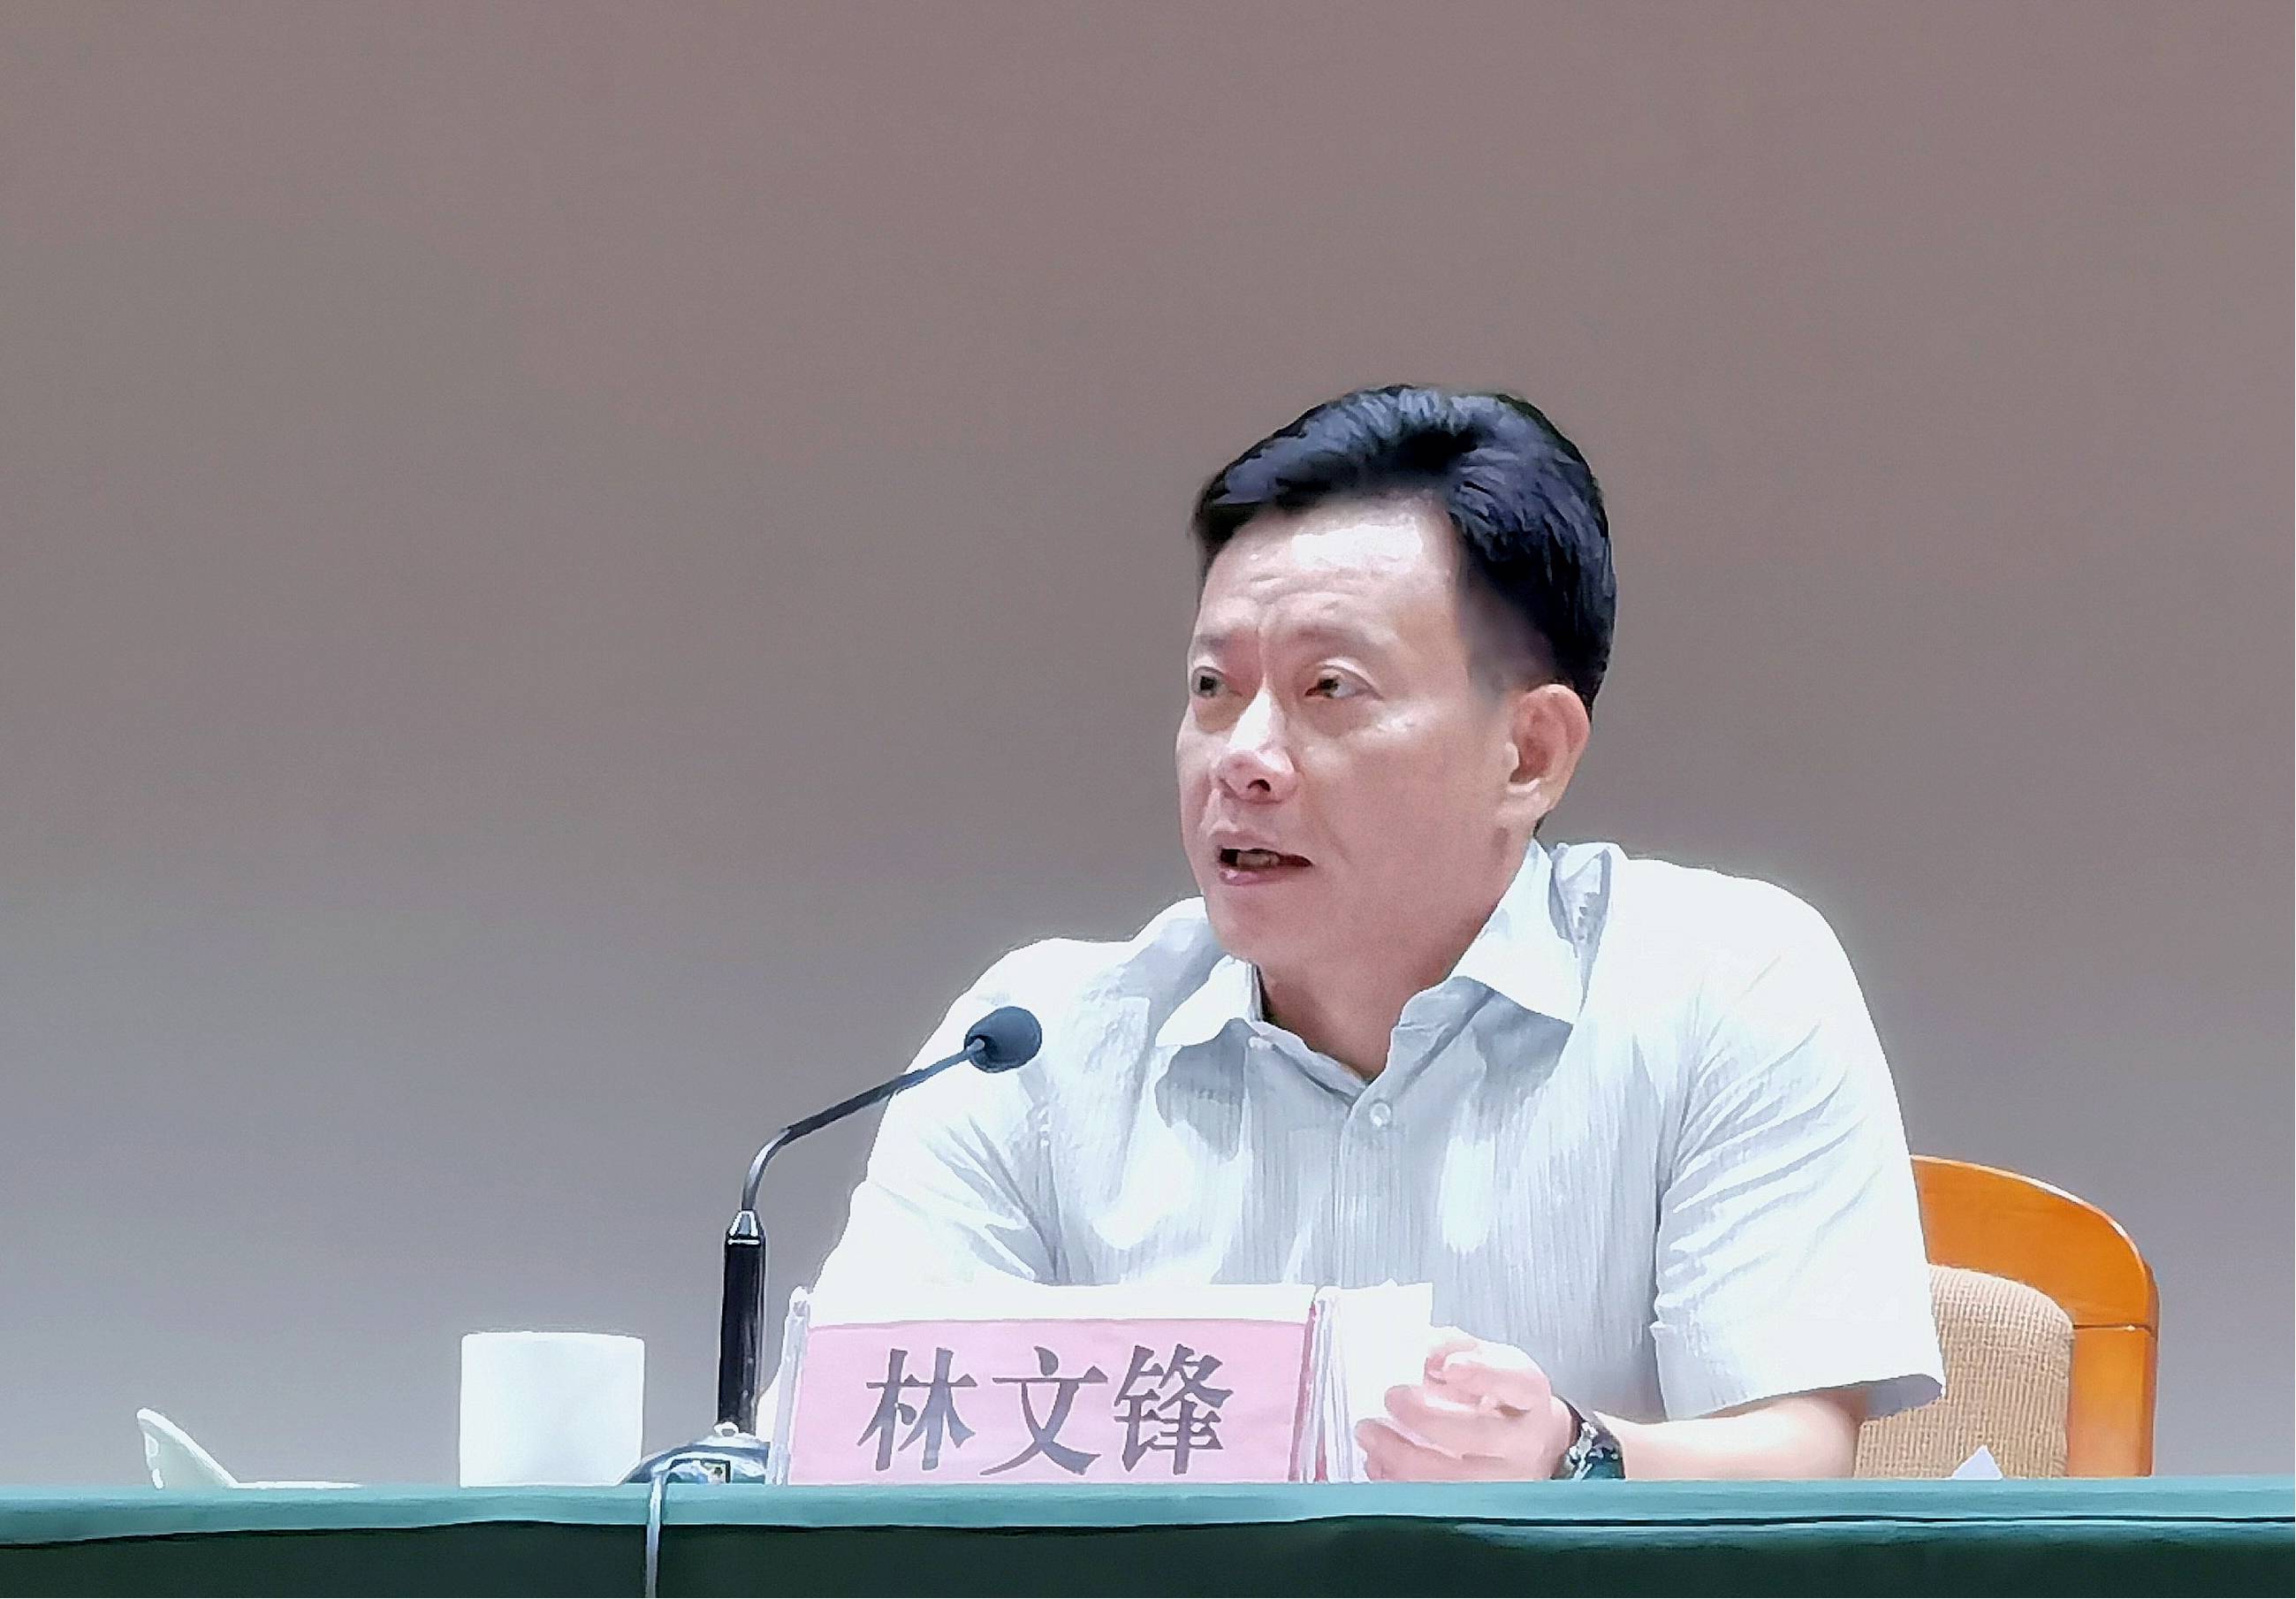 重庆市政府原副市长、市公安局原局长邓恢林受贿案一审开庭